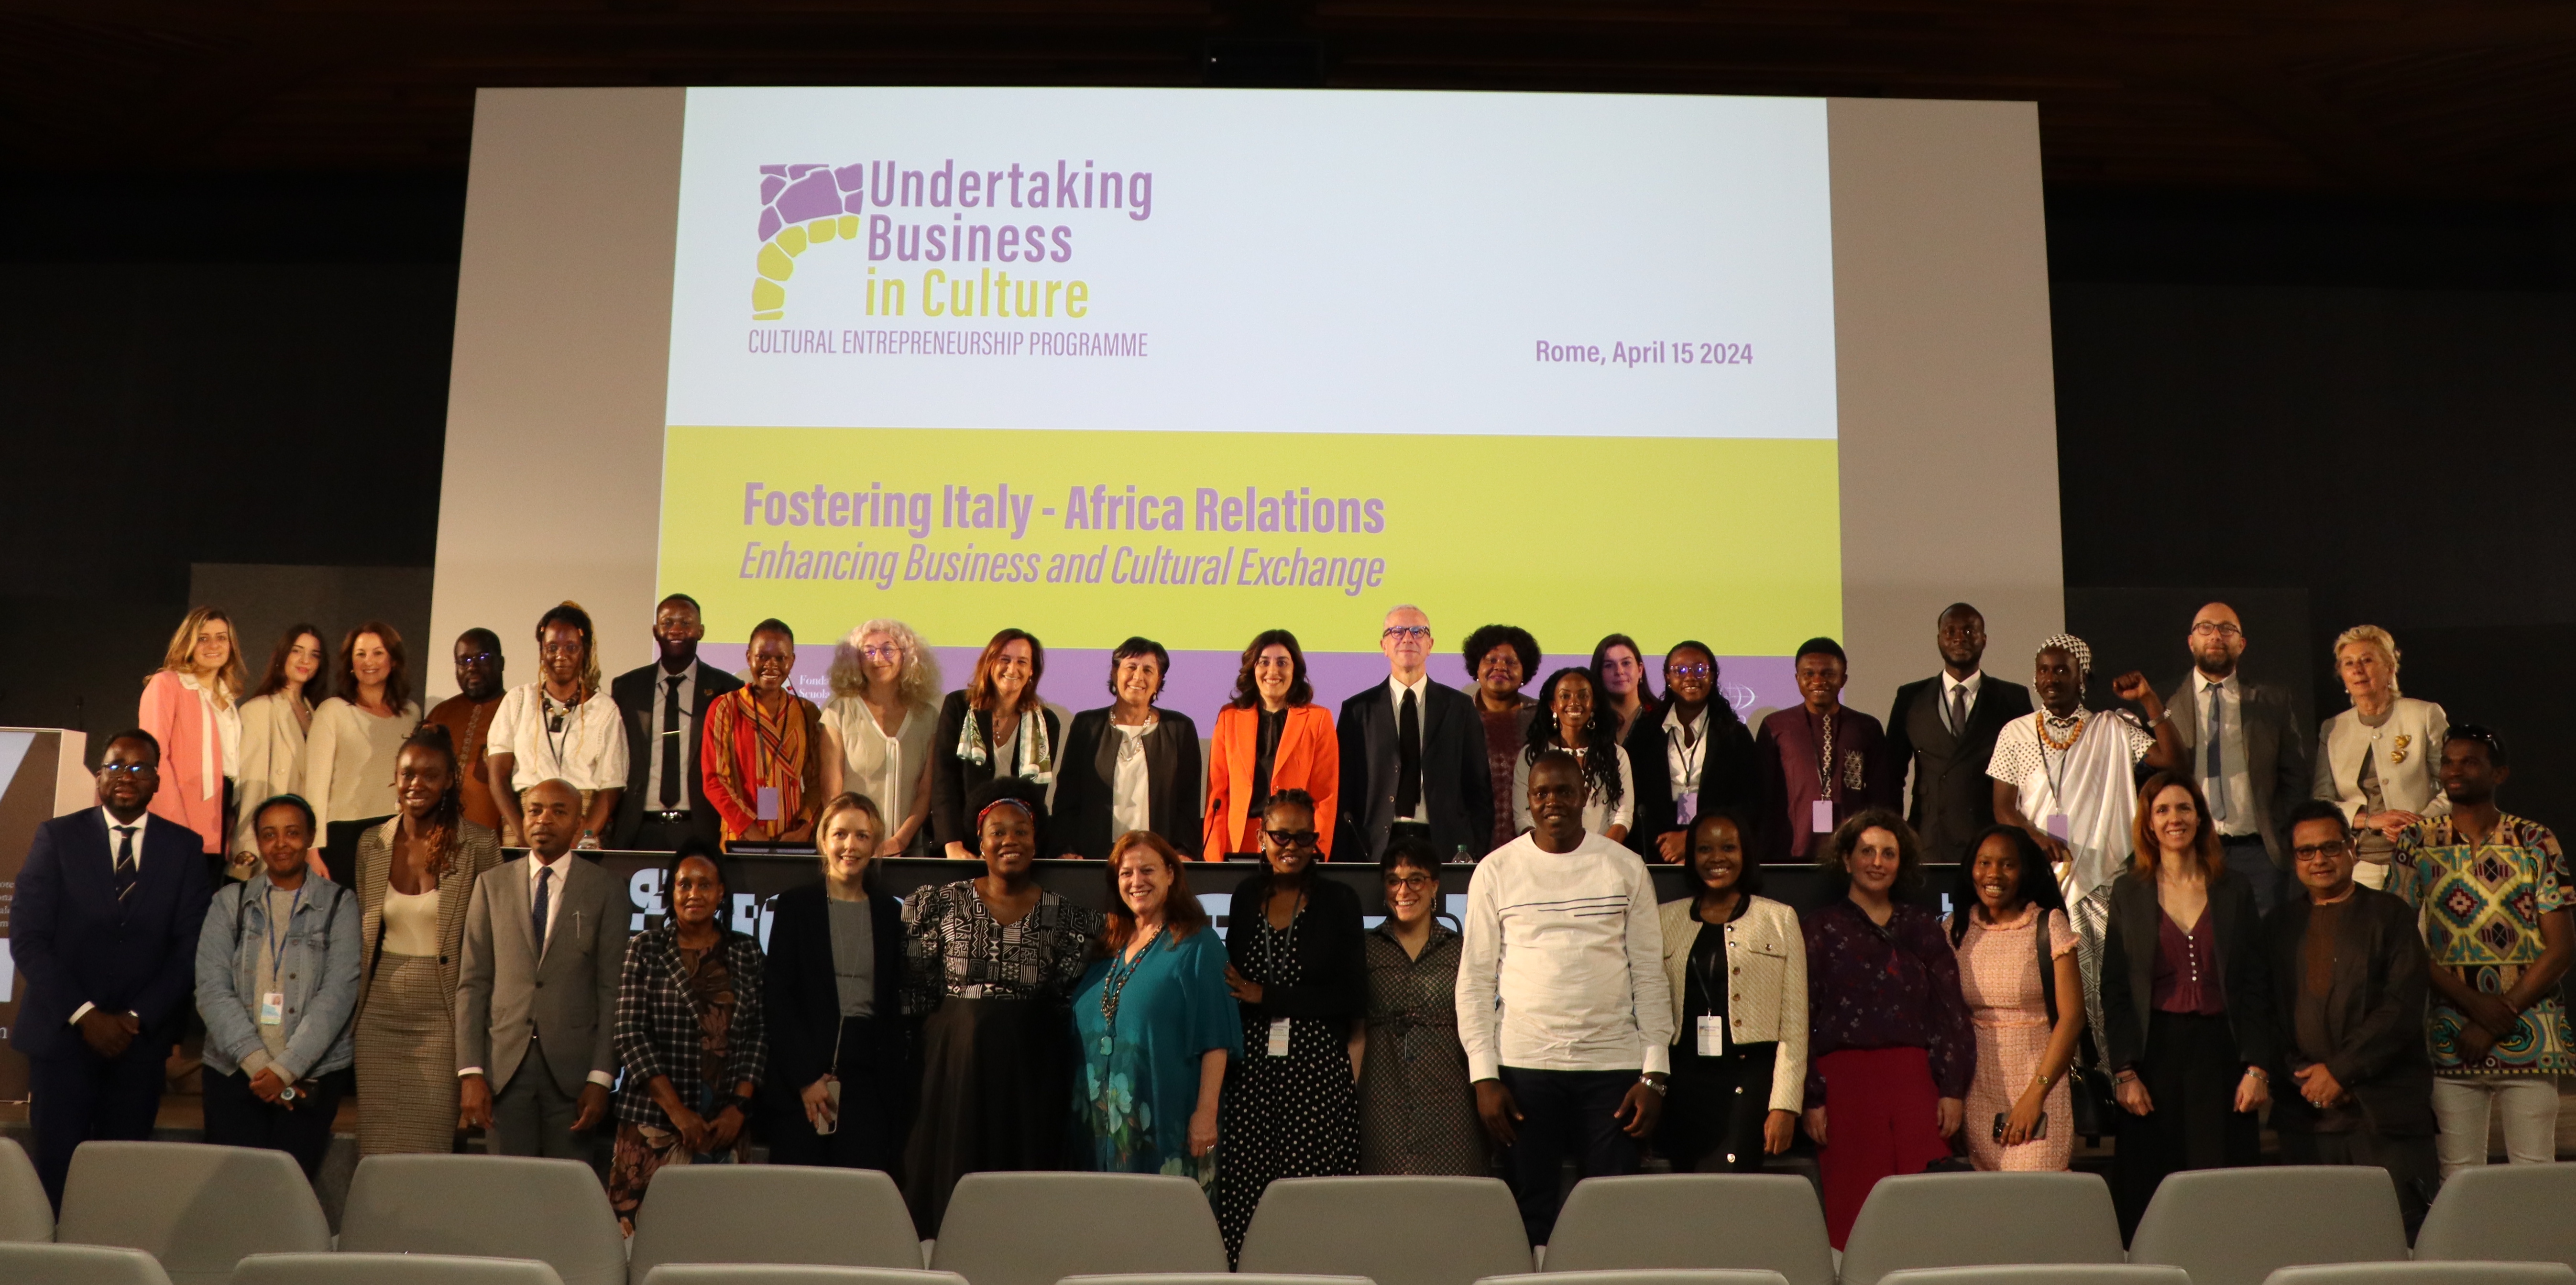 Estrechando lazos entre Italia y África: Empoderar a los jóvenes mediante el intercambio cultural